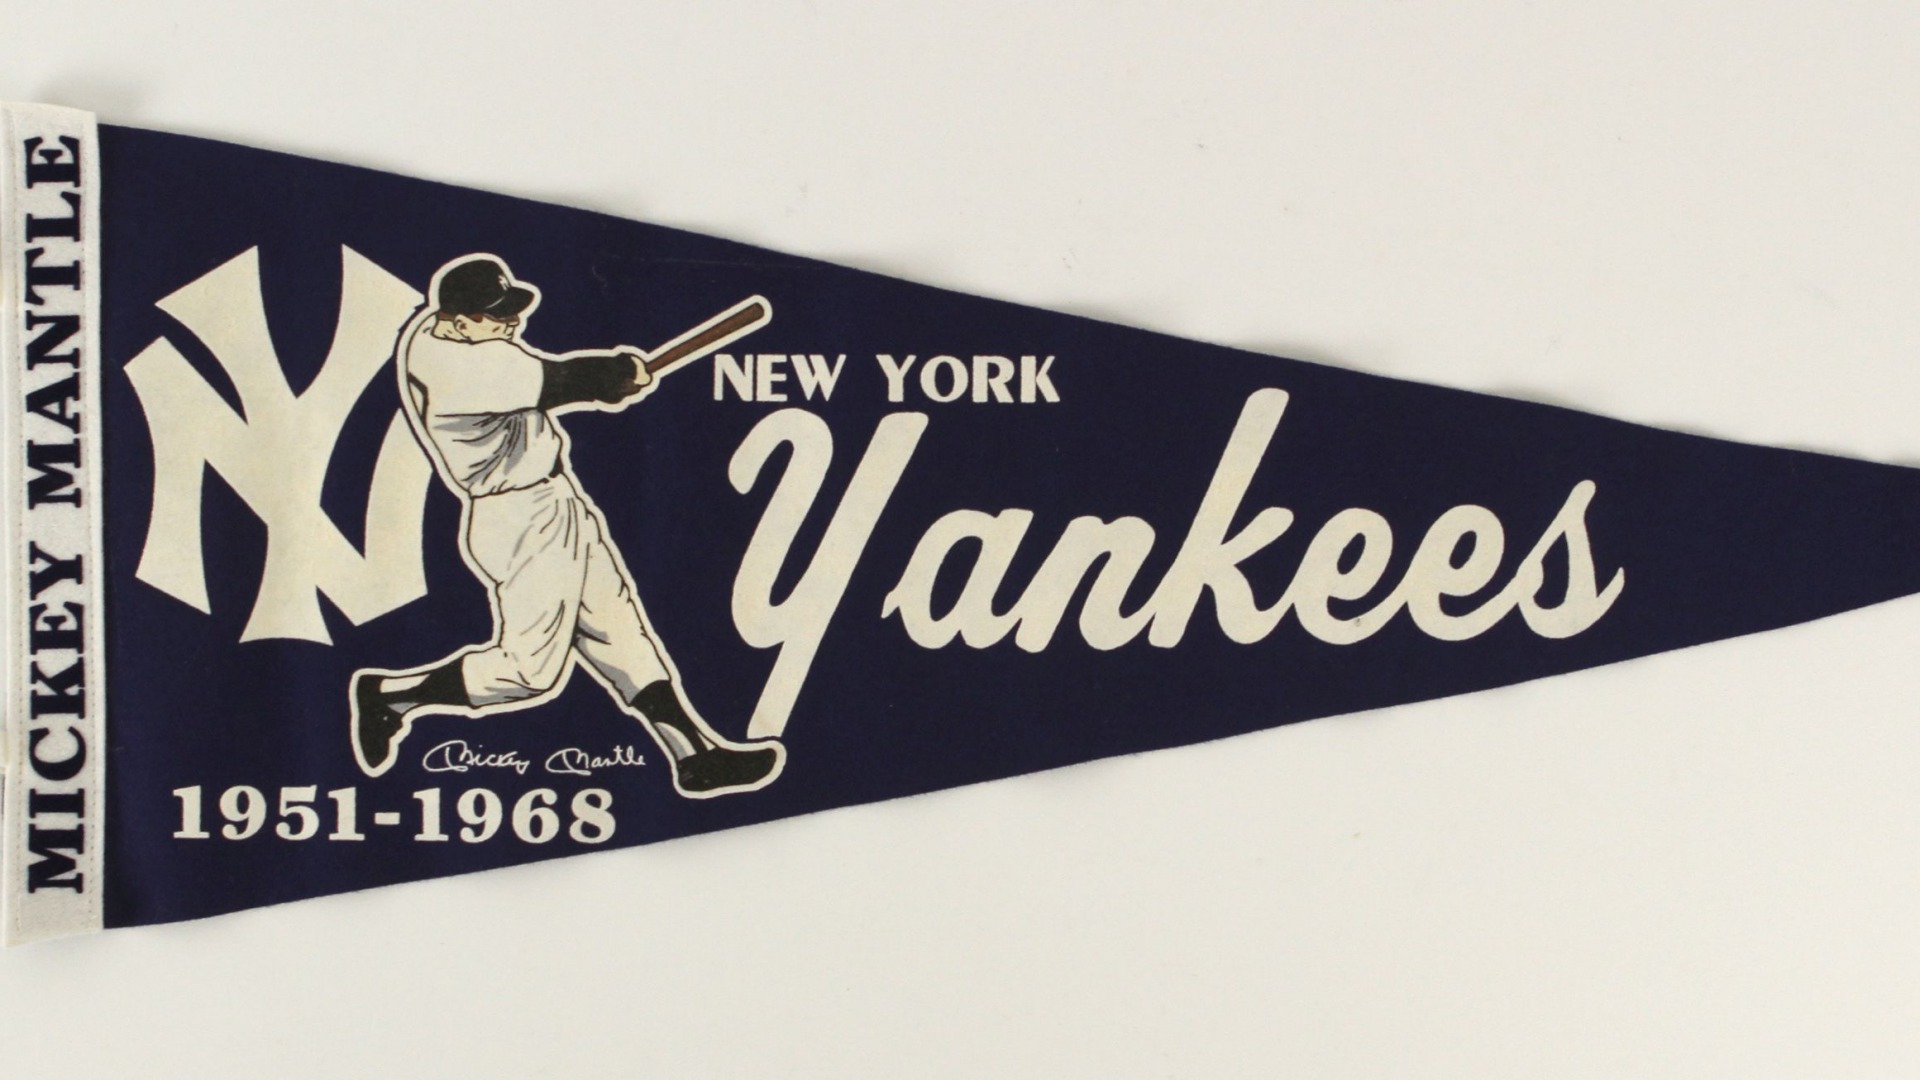 1920x1080 New York Yankees Wallpaper Brand Thunder